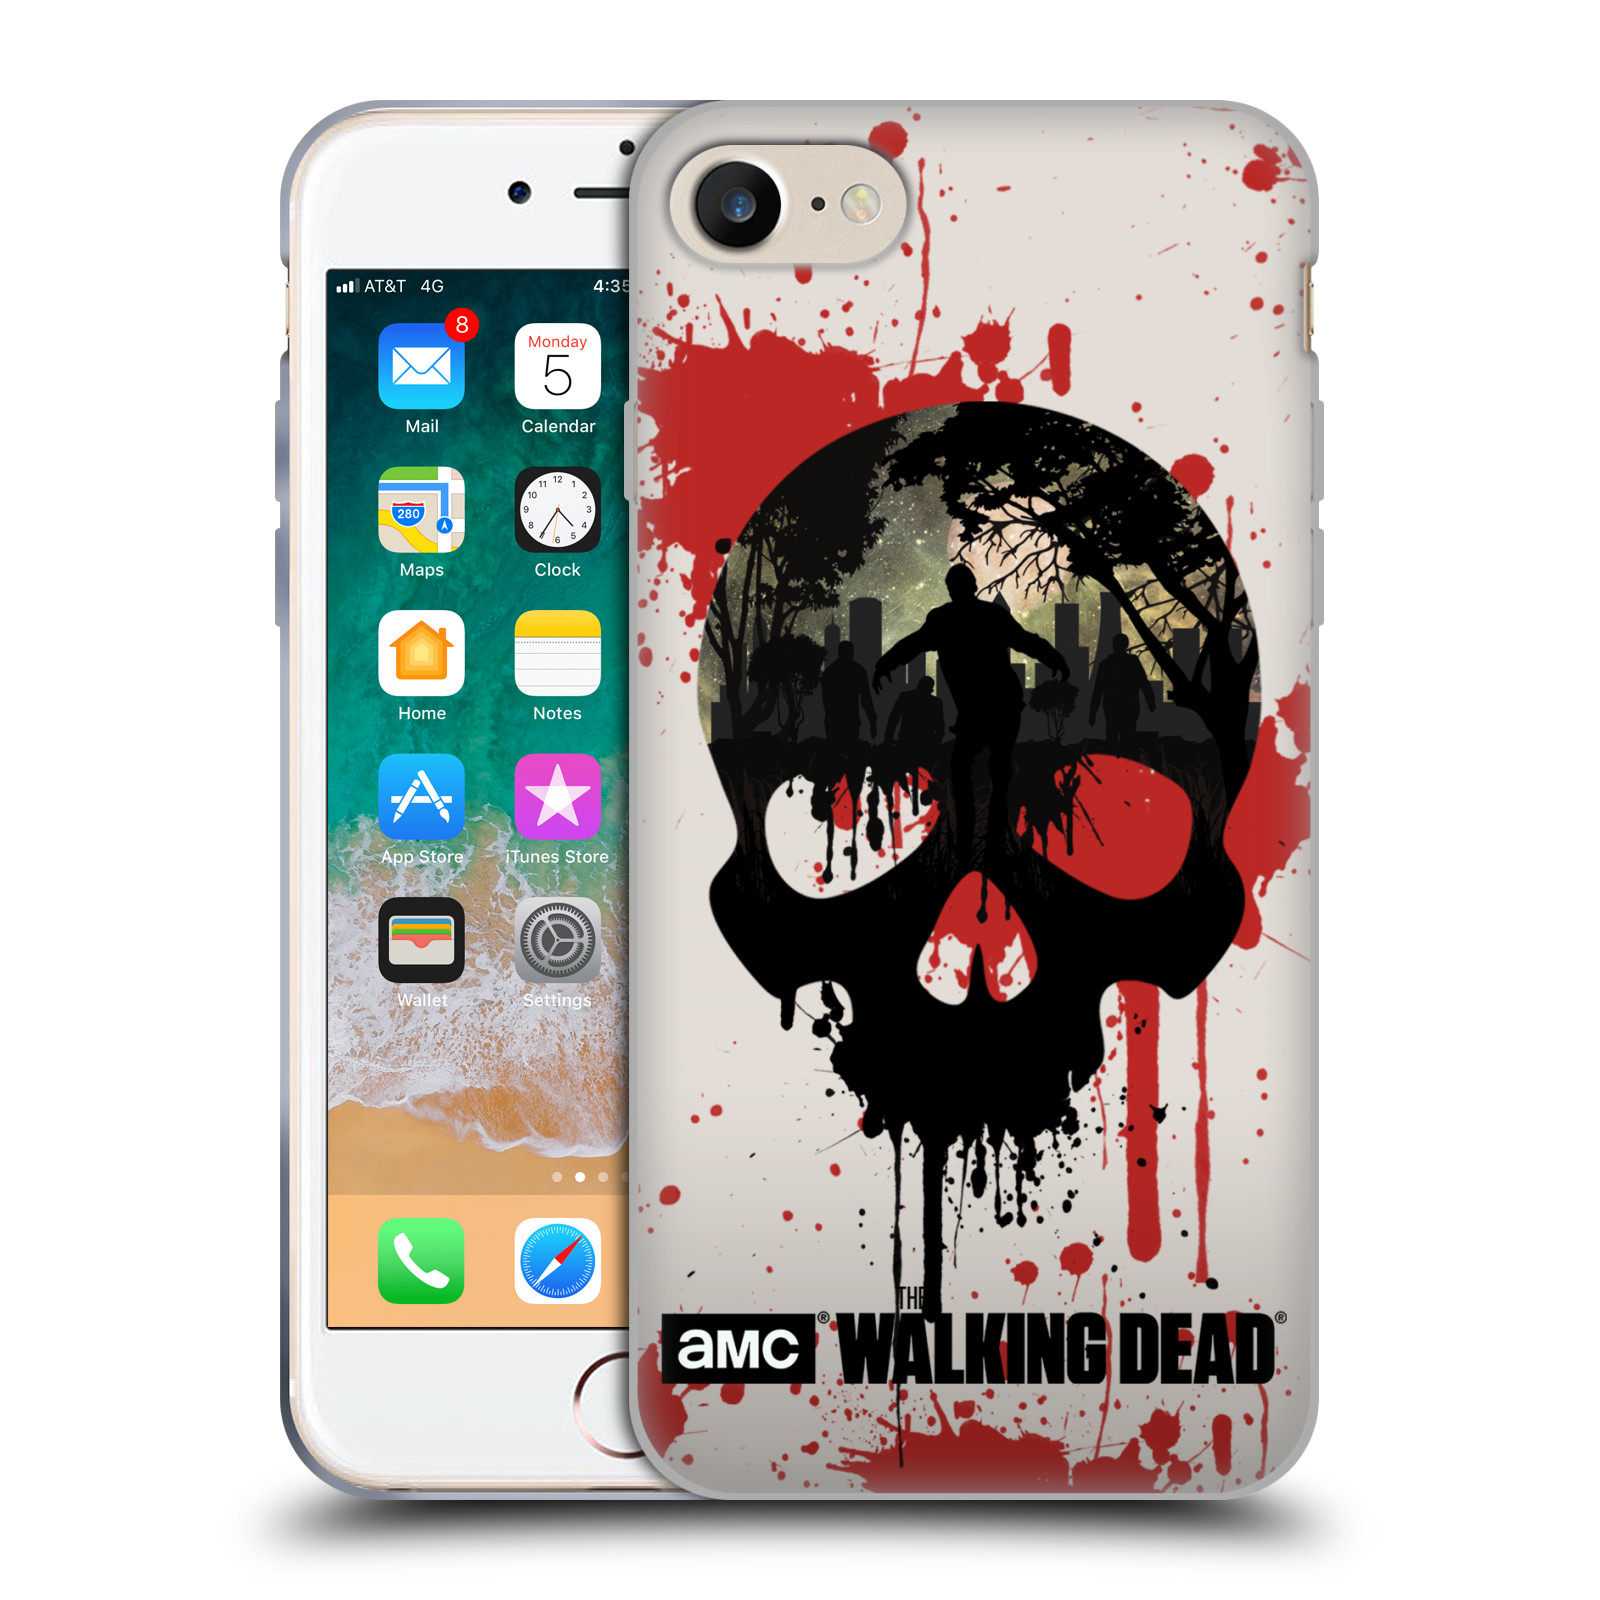 Silikonové pouzdro na mobil Apple iPhone 7 HEAD CASE Živí mrtví - Lebka (Silikonový kryt či obal na mobilní telefon s licencovaným motivem Živí mrtví / The Walking Dead pro Apple iPhone 7)